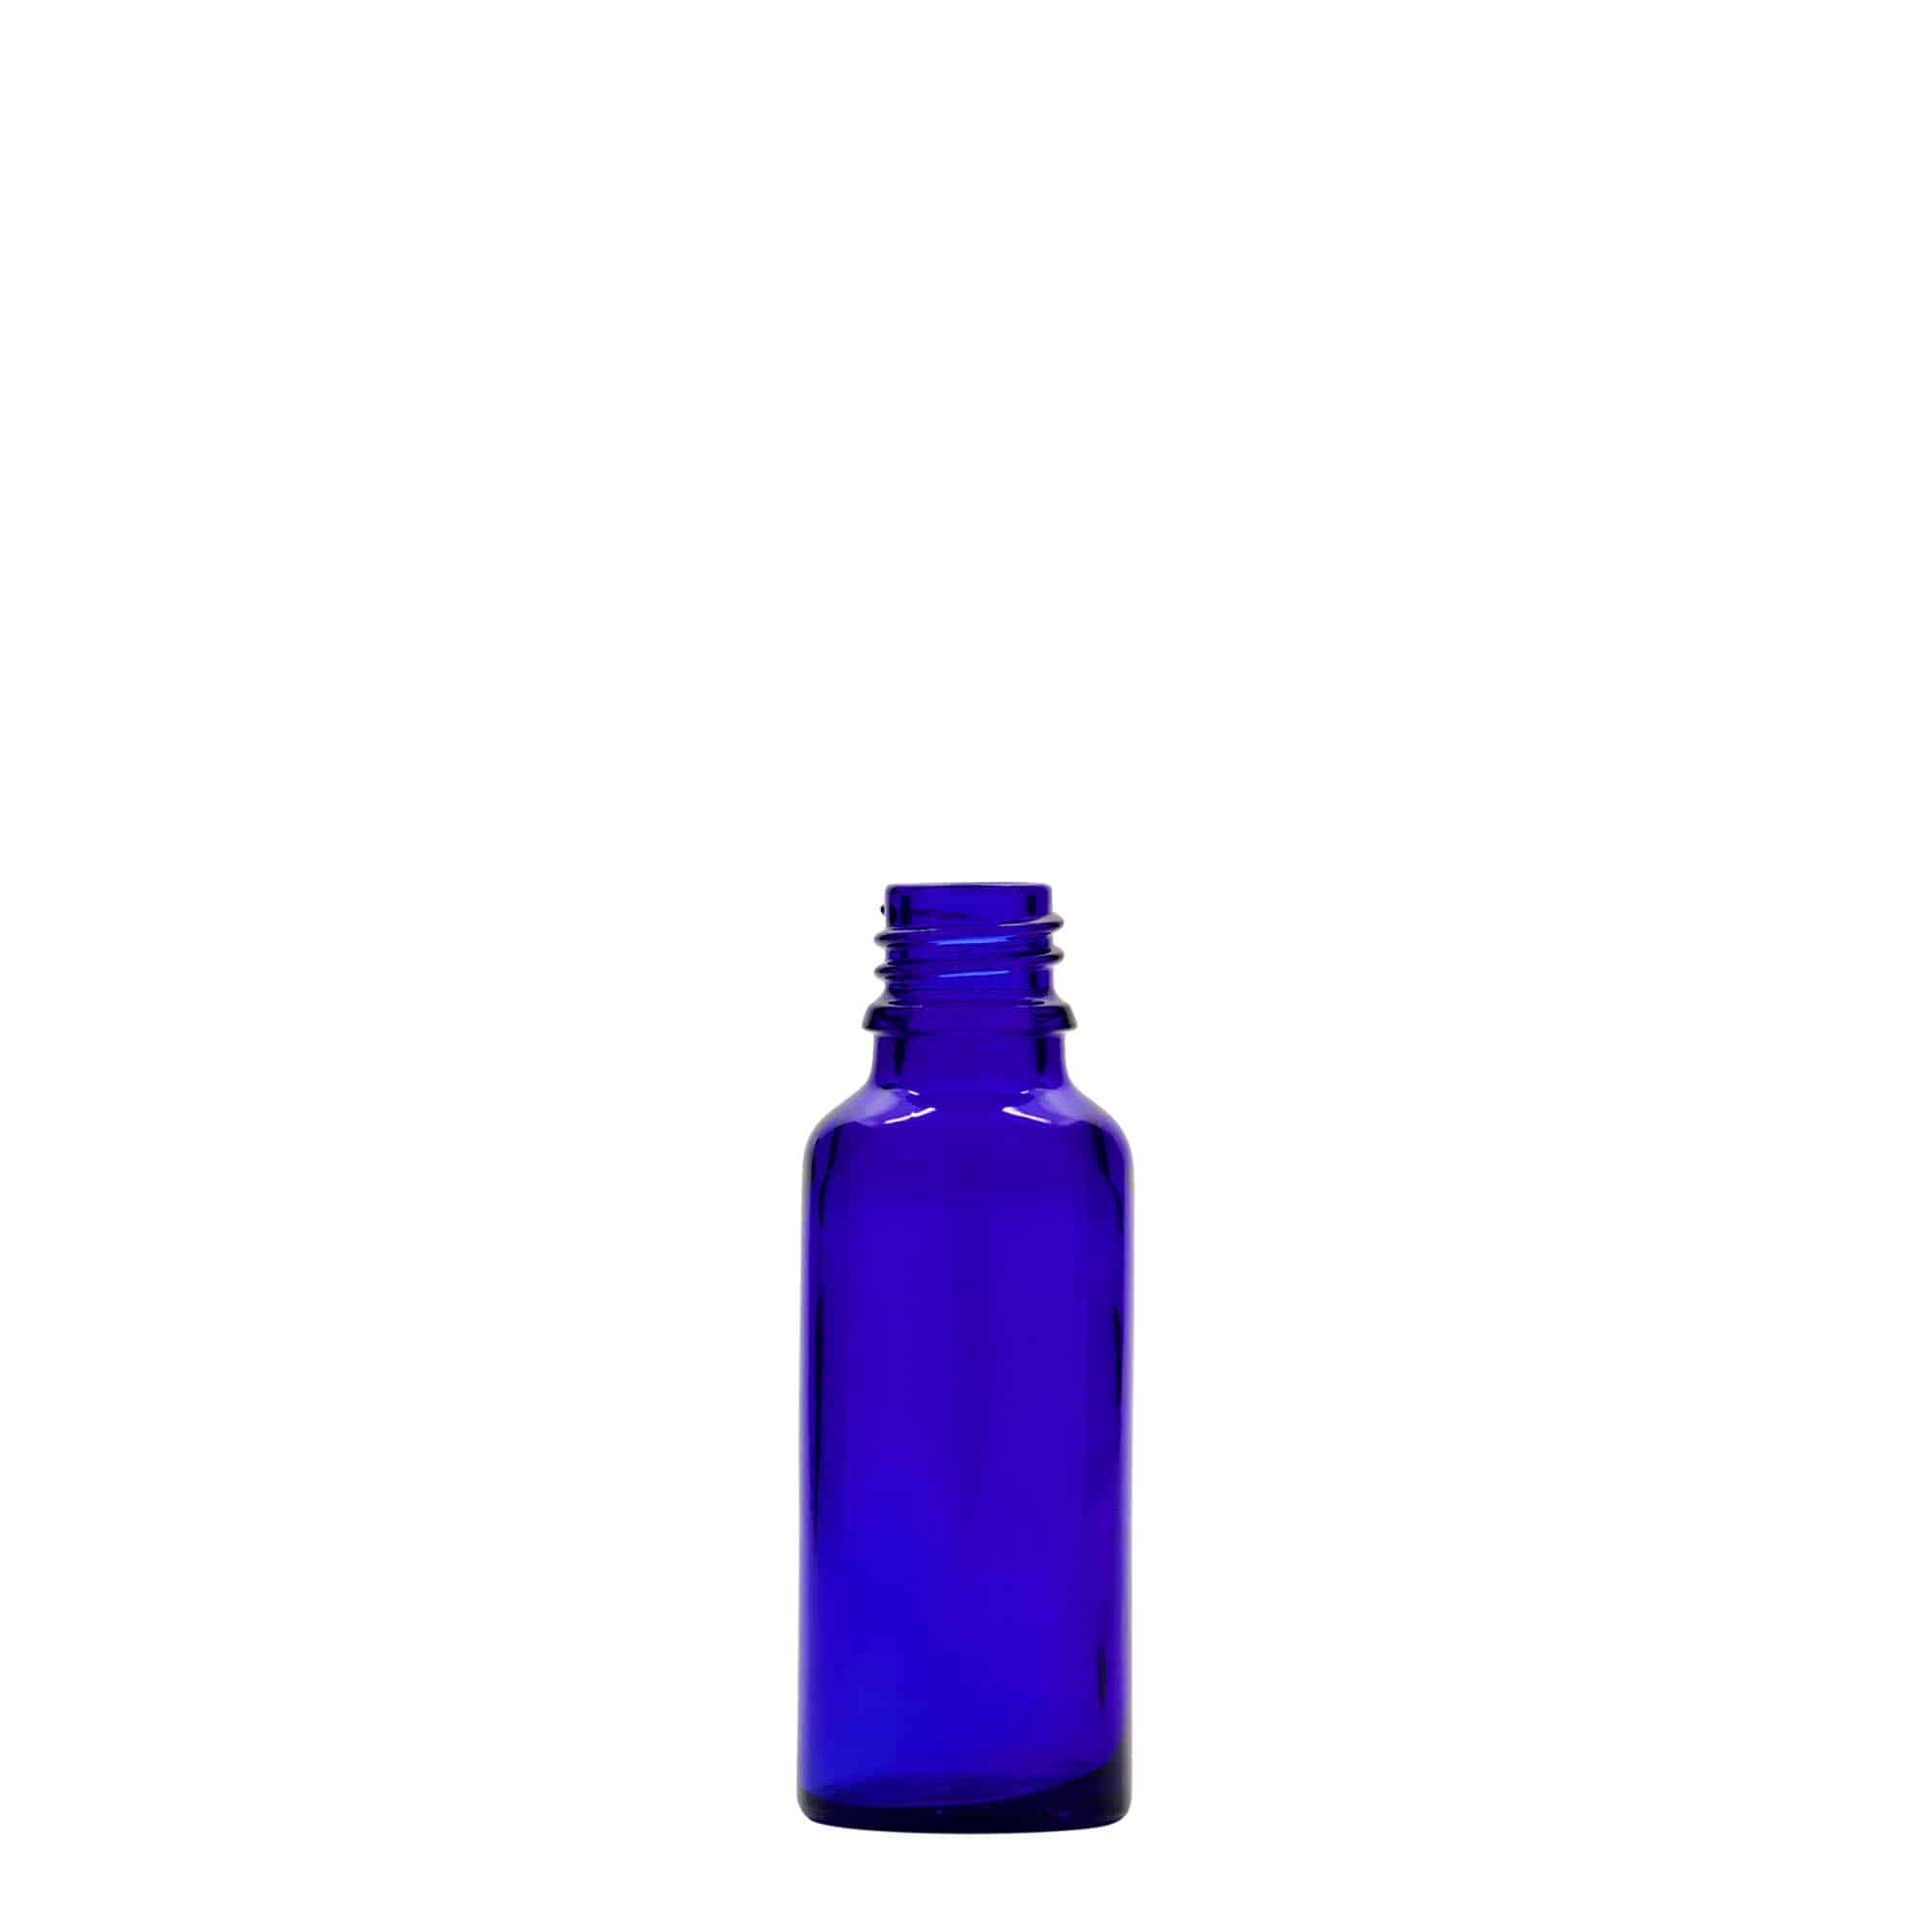 30 ml butelka farmaceutyczna, szkło, kolor błękit królewski, zamknięcie: DIN 18